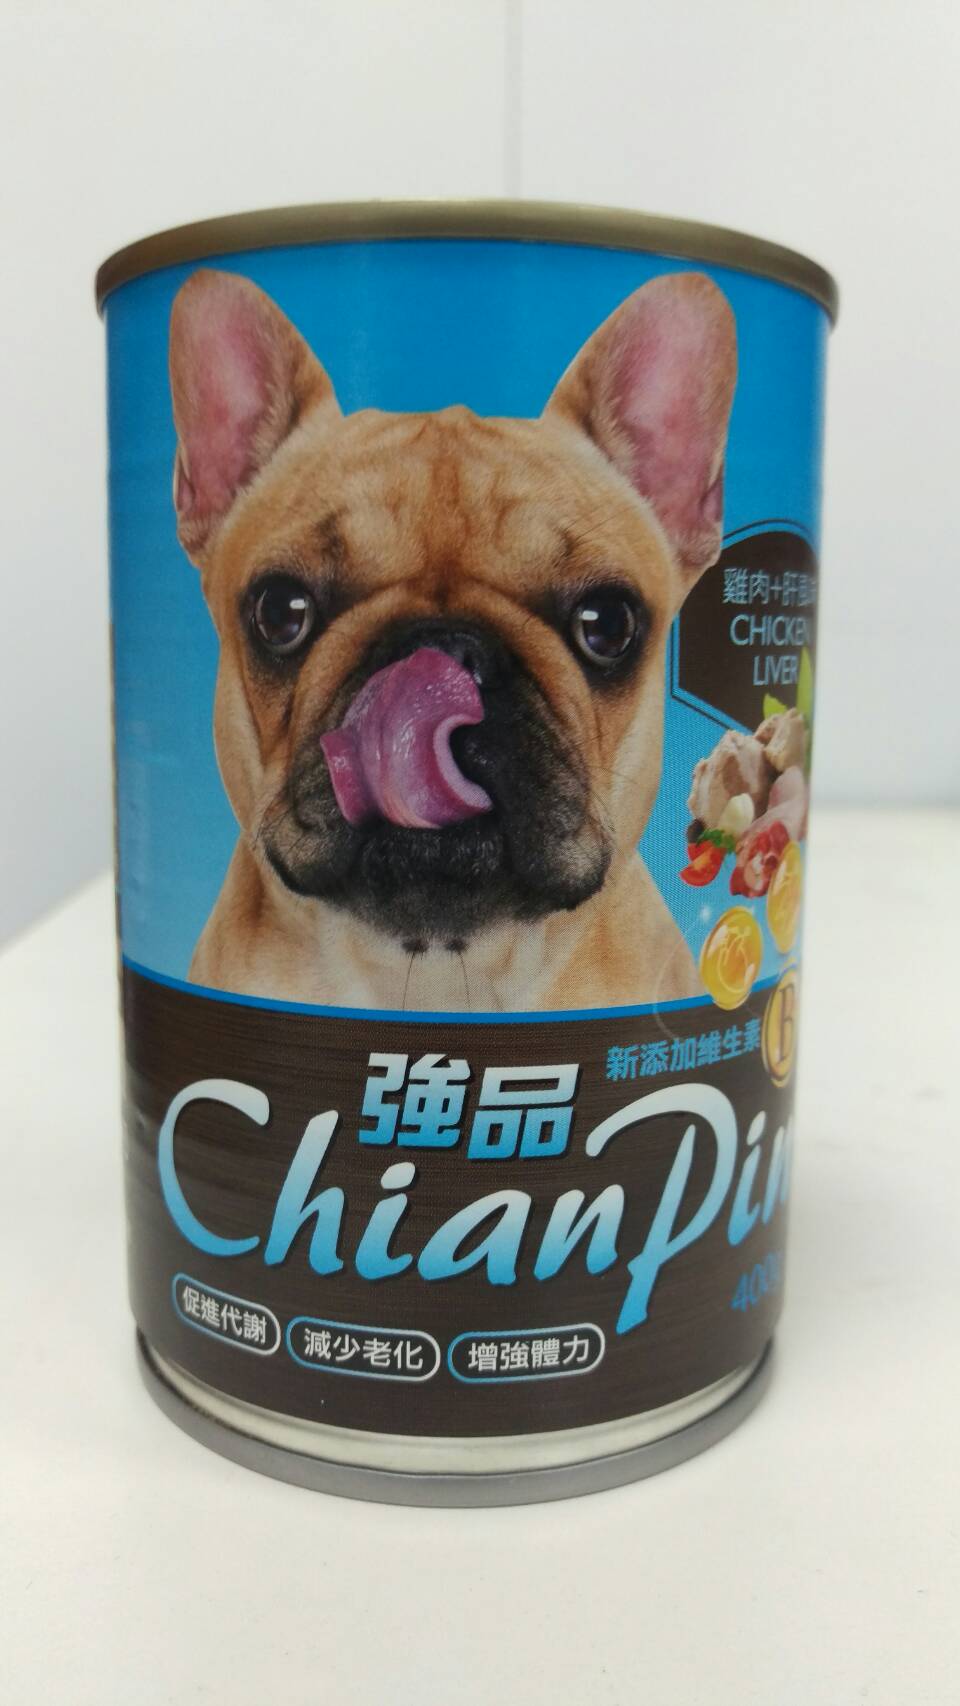 強品犬罐-雞肉+肝風味
Chian Pin dog can- chicken+liver